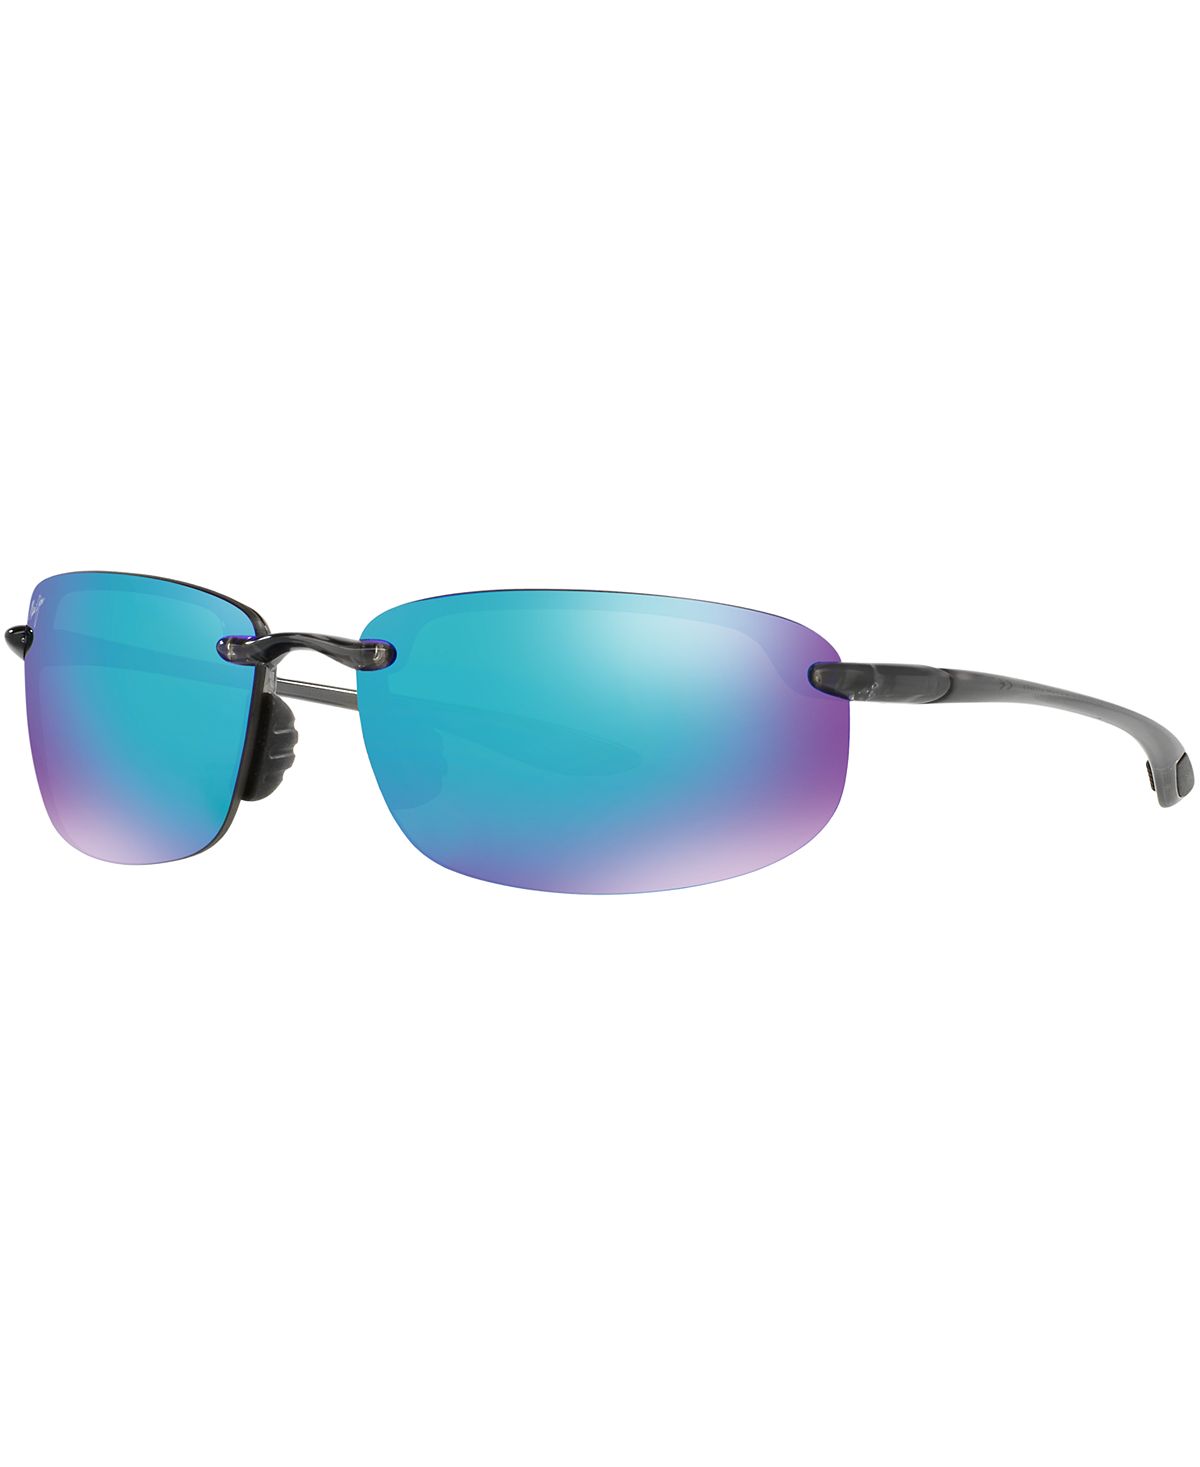 Поляризованные солнцезащитные очки Hookipa, коллекция 407 Blue Hawaii Maui Jim солнцезащитные очки kou maui jim цвет navy blue blue hawaii